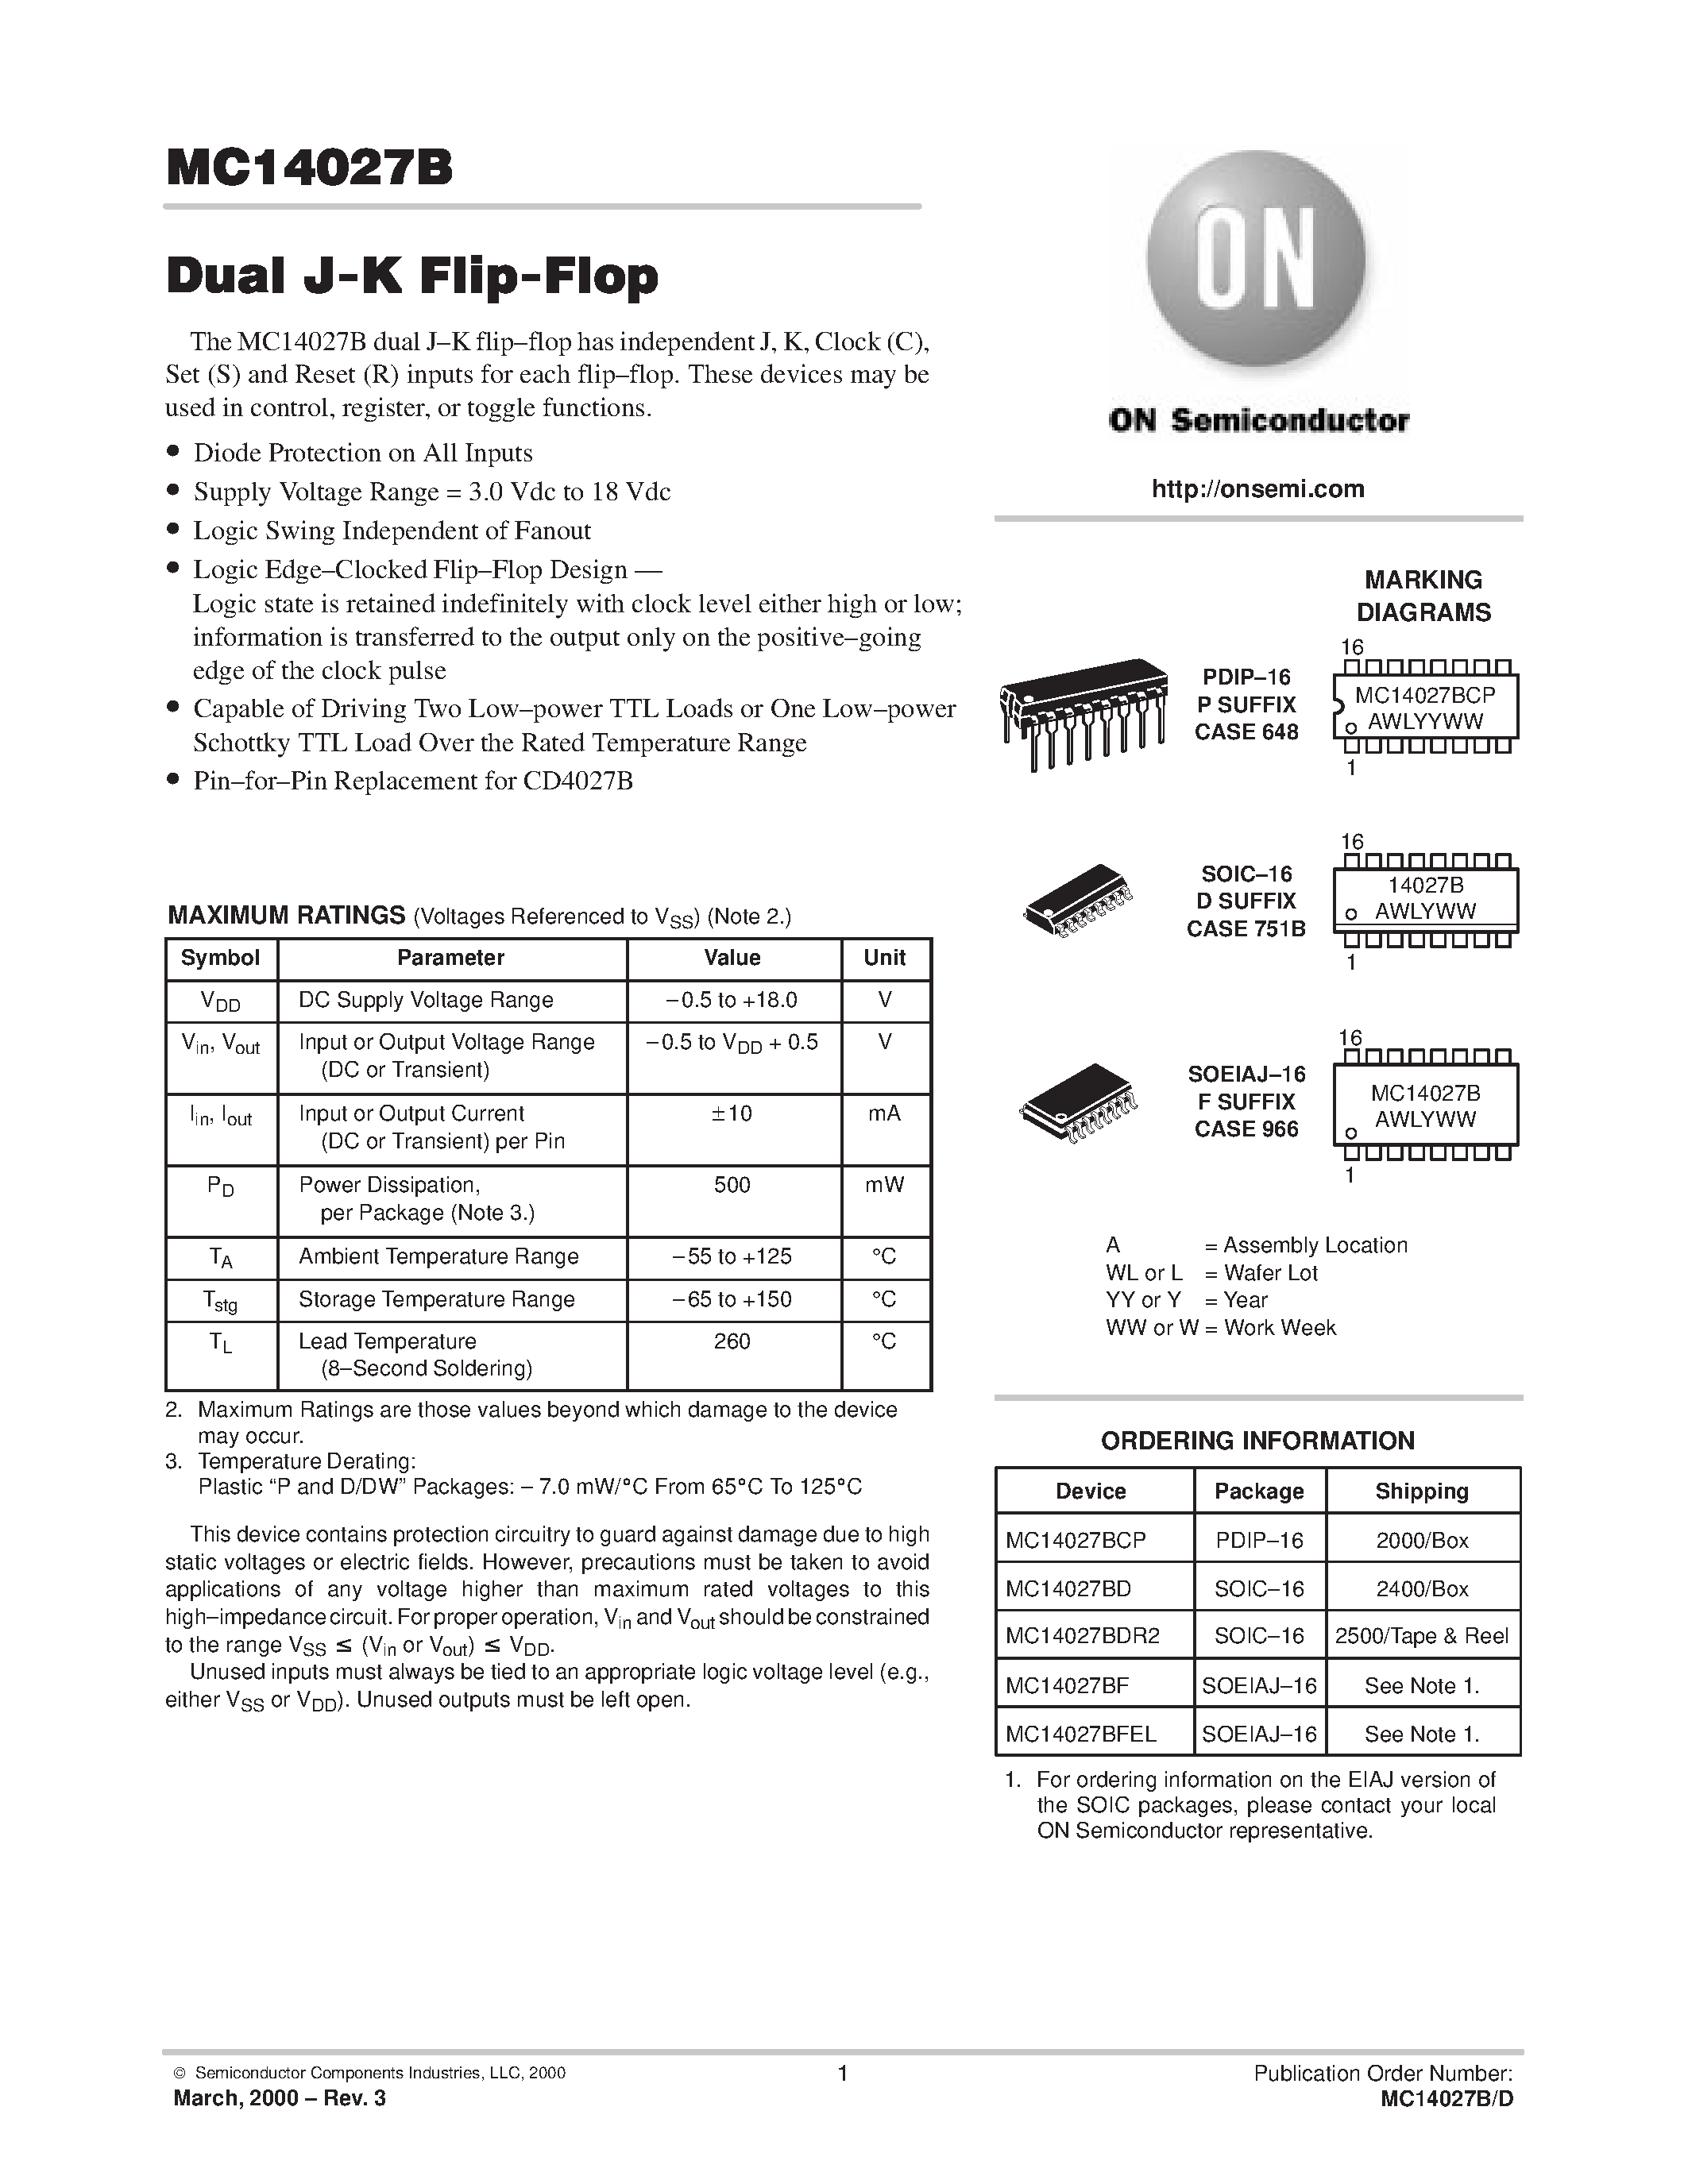 Даташит MC14027 - Dual J-K Flip-Flop страница 1